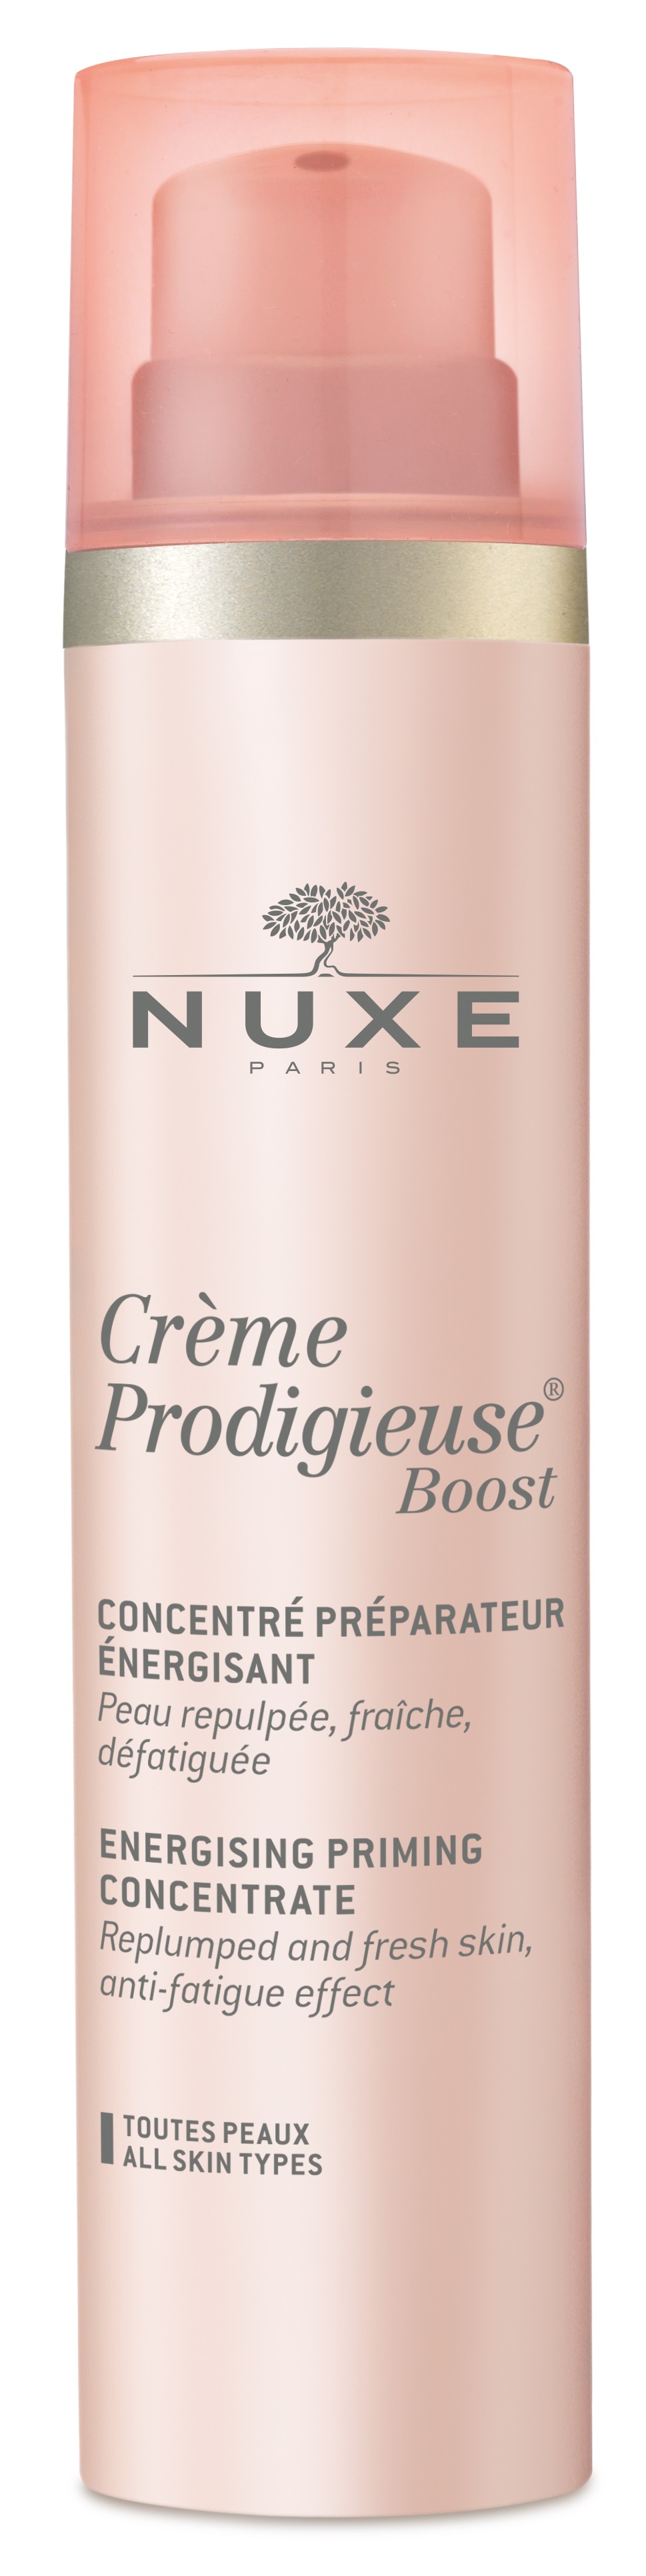 NUXE Crème Prodigieuse Boost energizáló bőrkiegyenlítő koncentrátum 100 ml